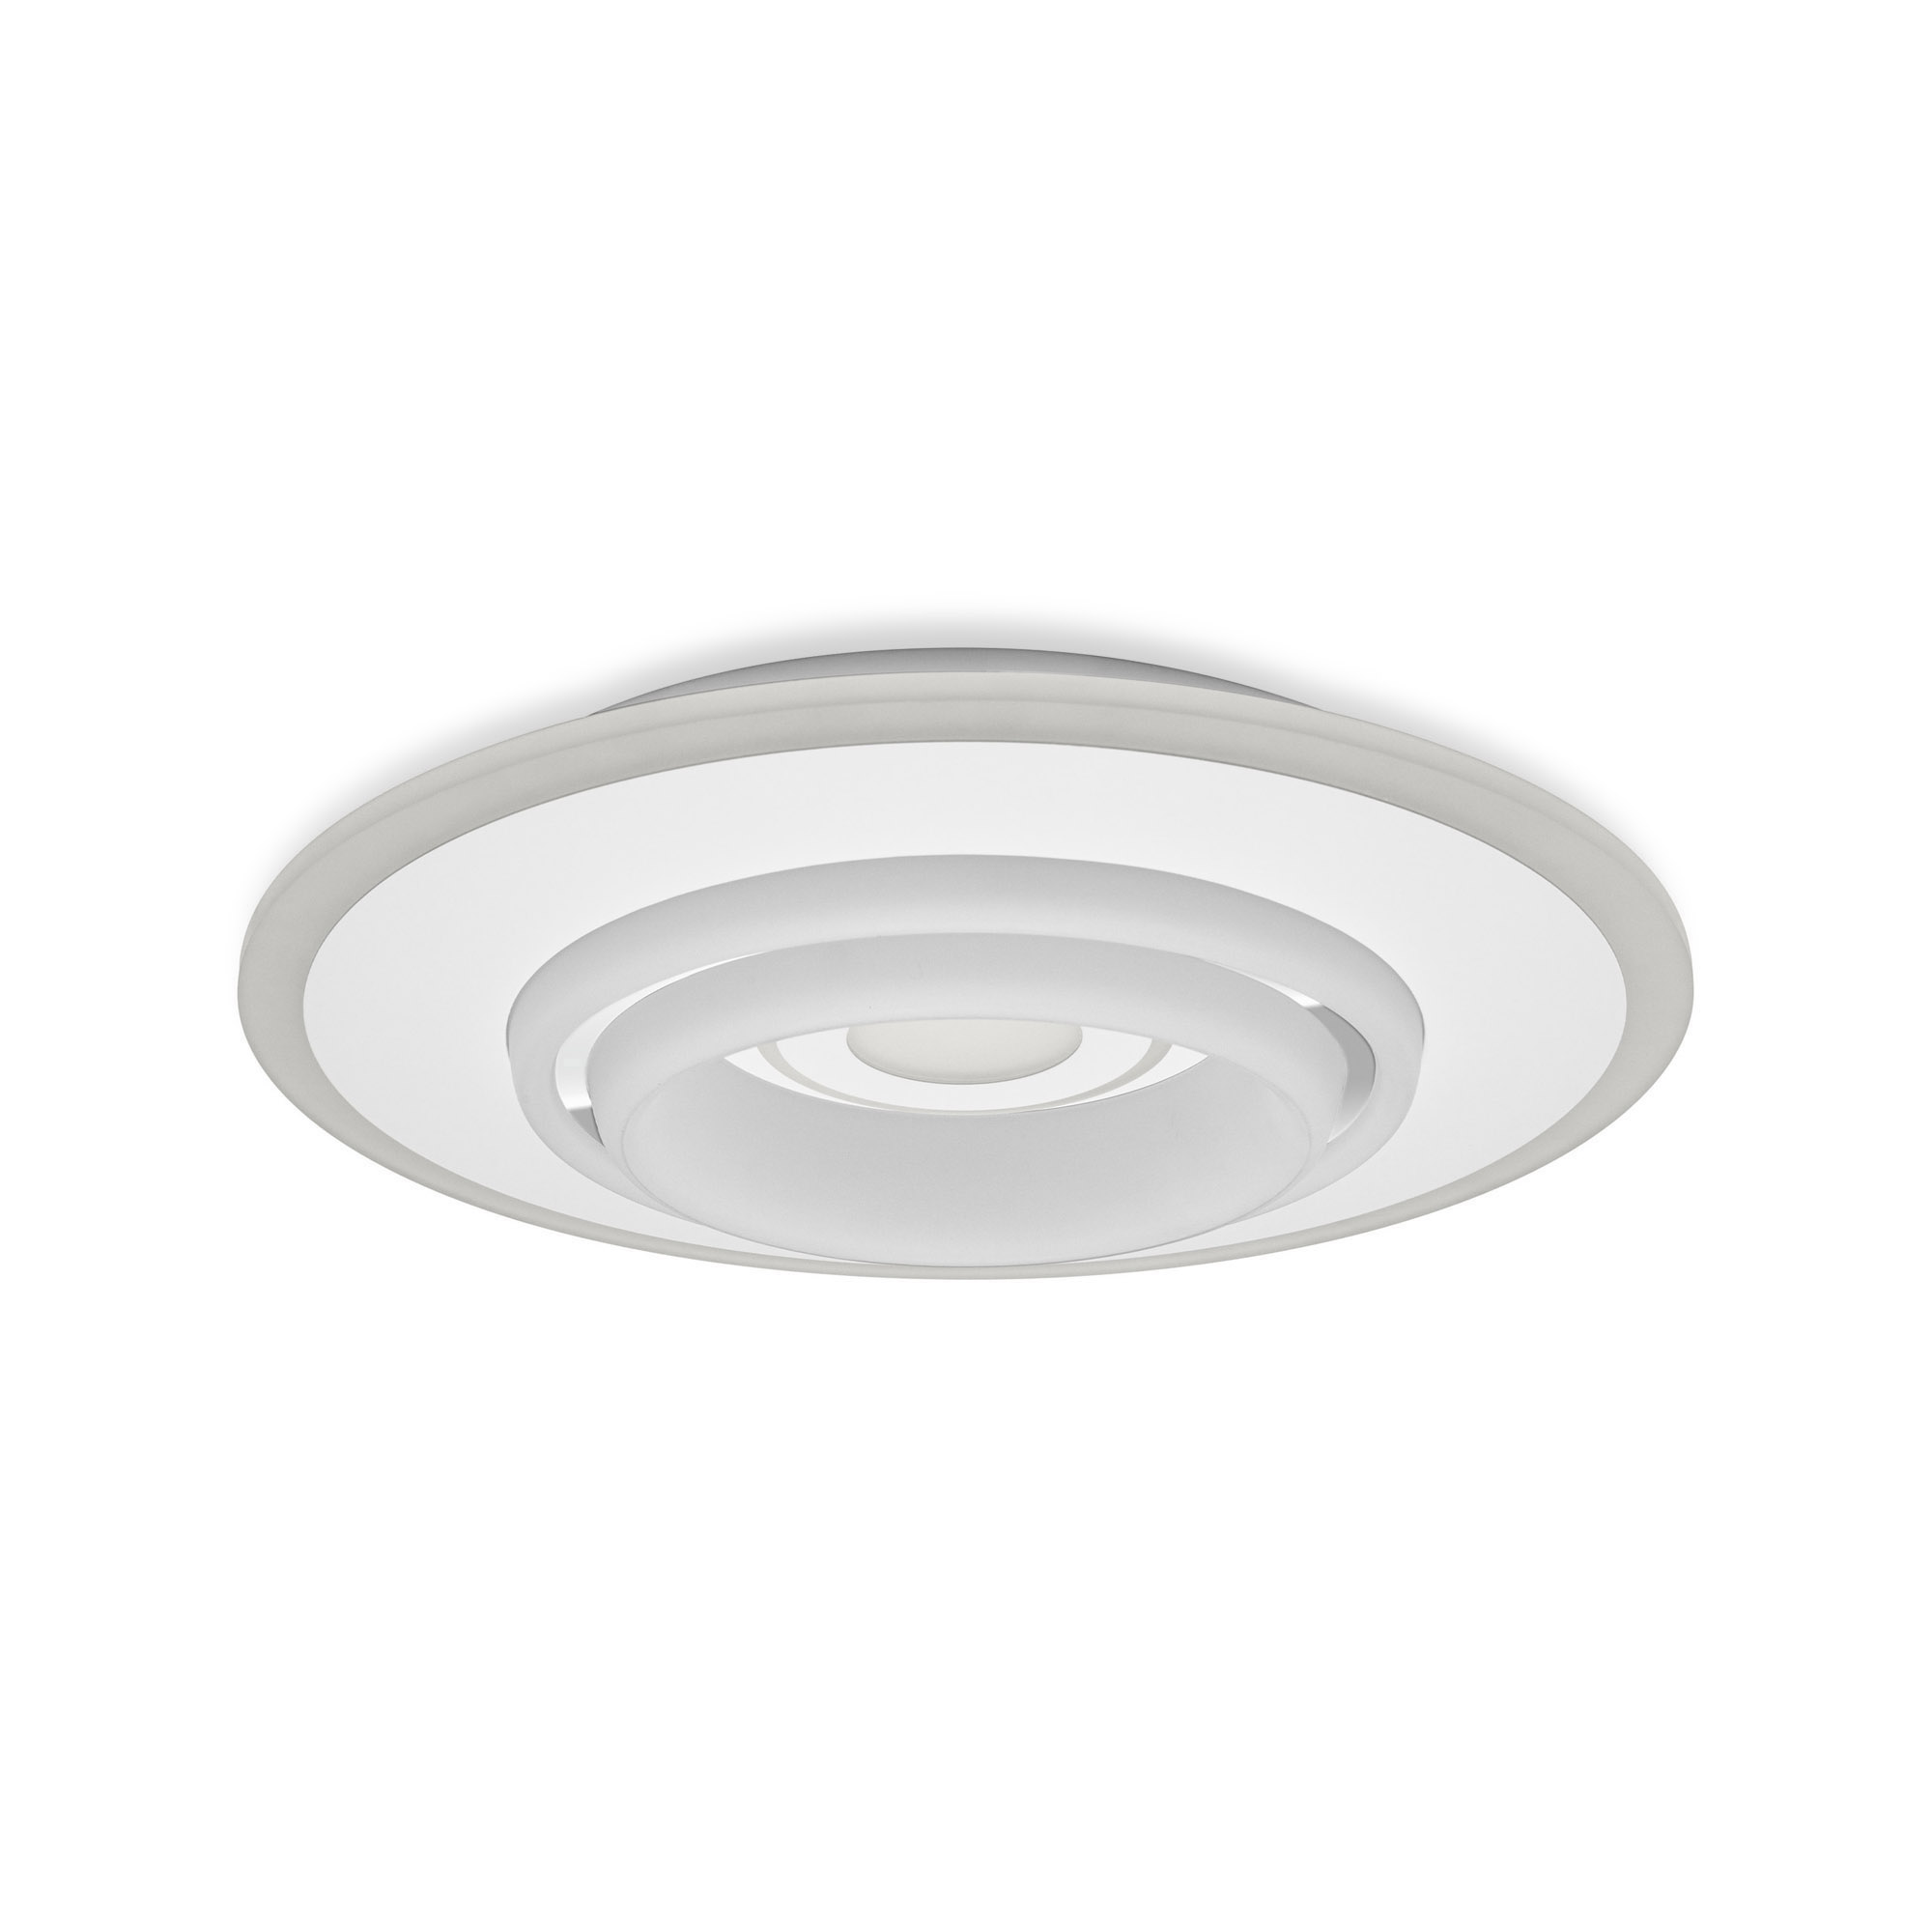 Lampa LED de tavan LEDVANCE SMART+ WiFi Tunable LED-uri Albe RGB ORBIS Rumor 500mm gri 3300lm